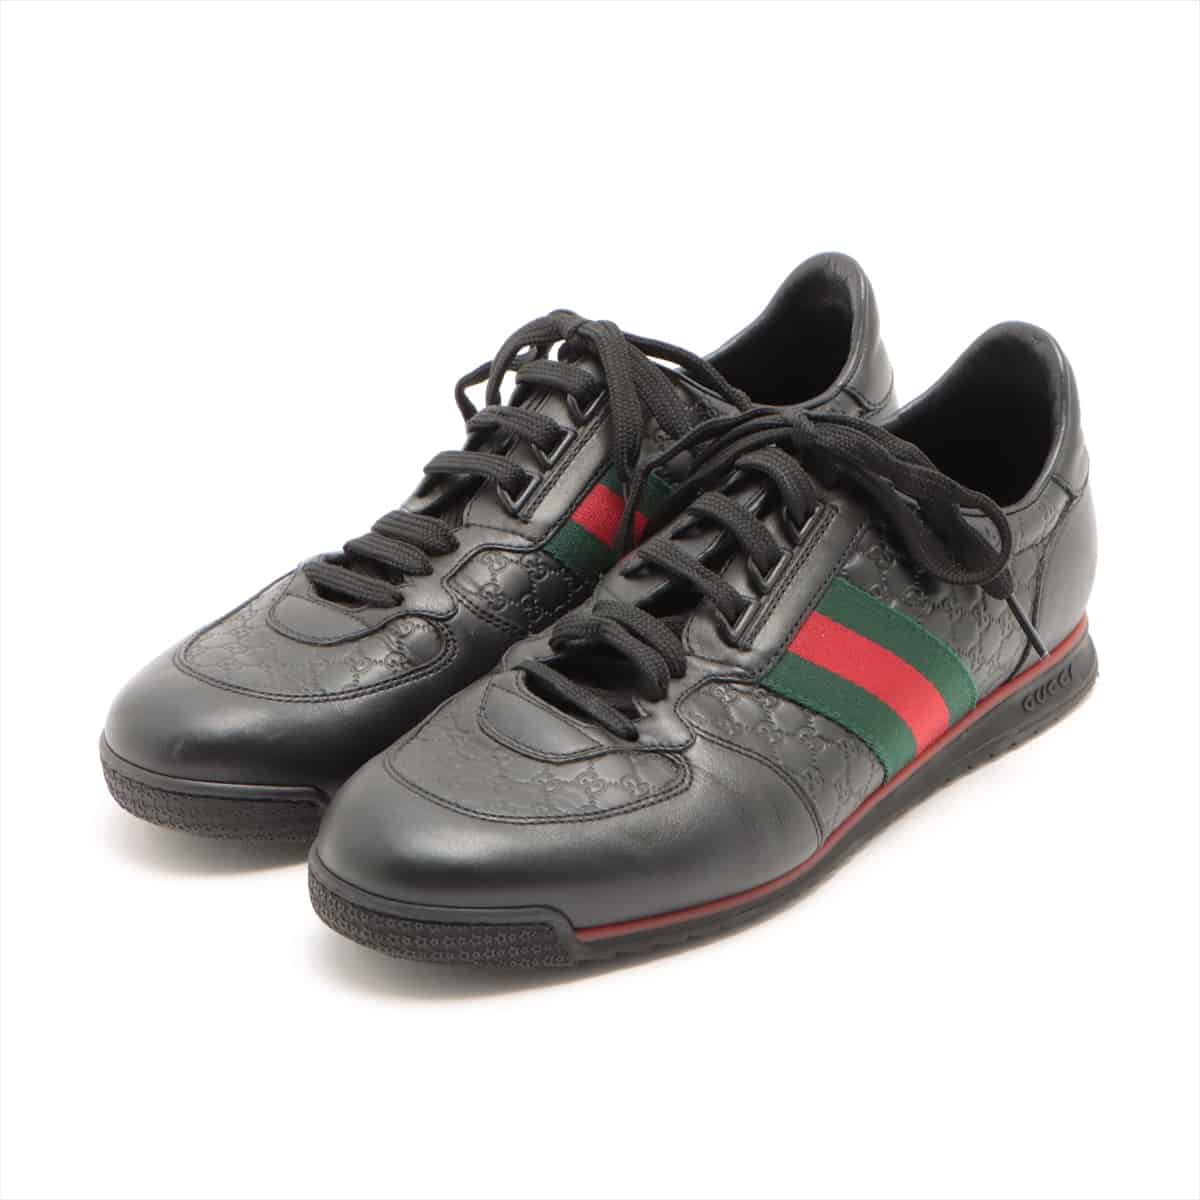 Gucci Micro Guccissima Leather Sneakers 7 Men's Black Sherry Line 233334